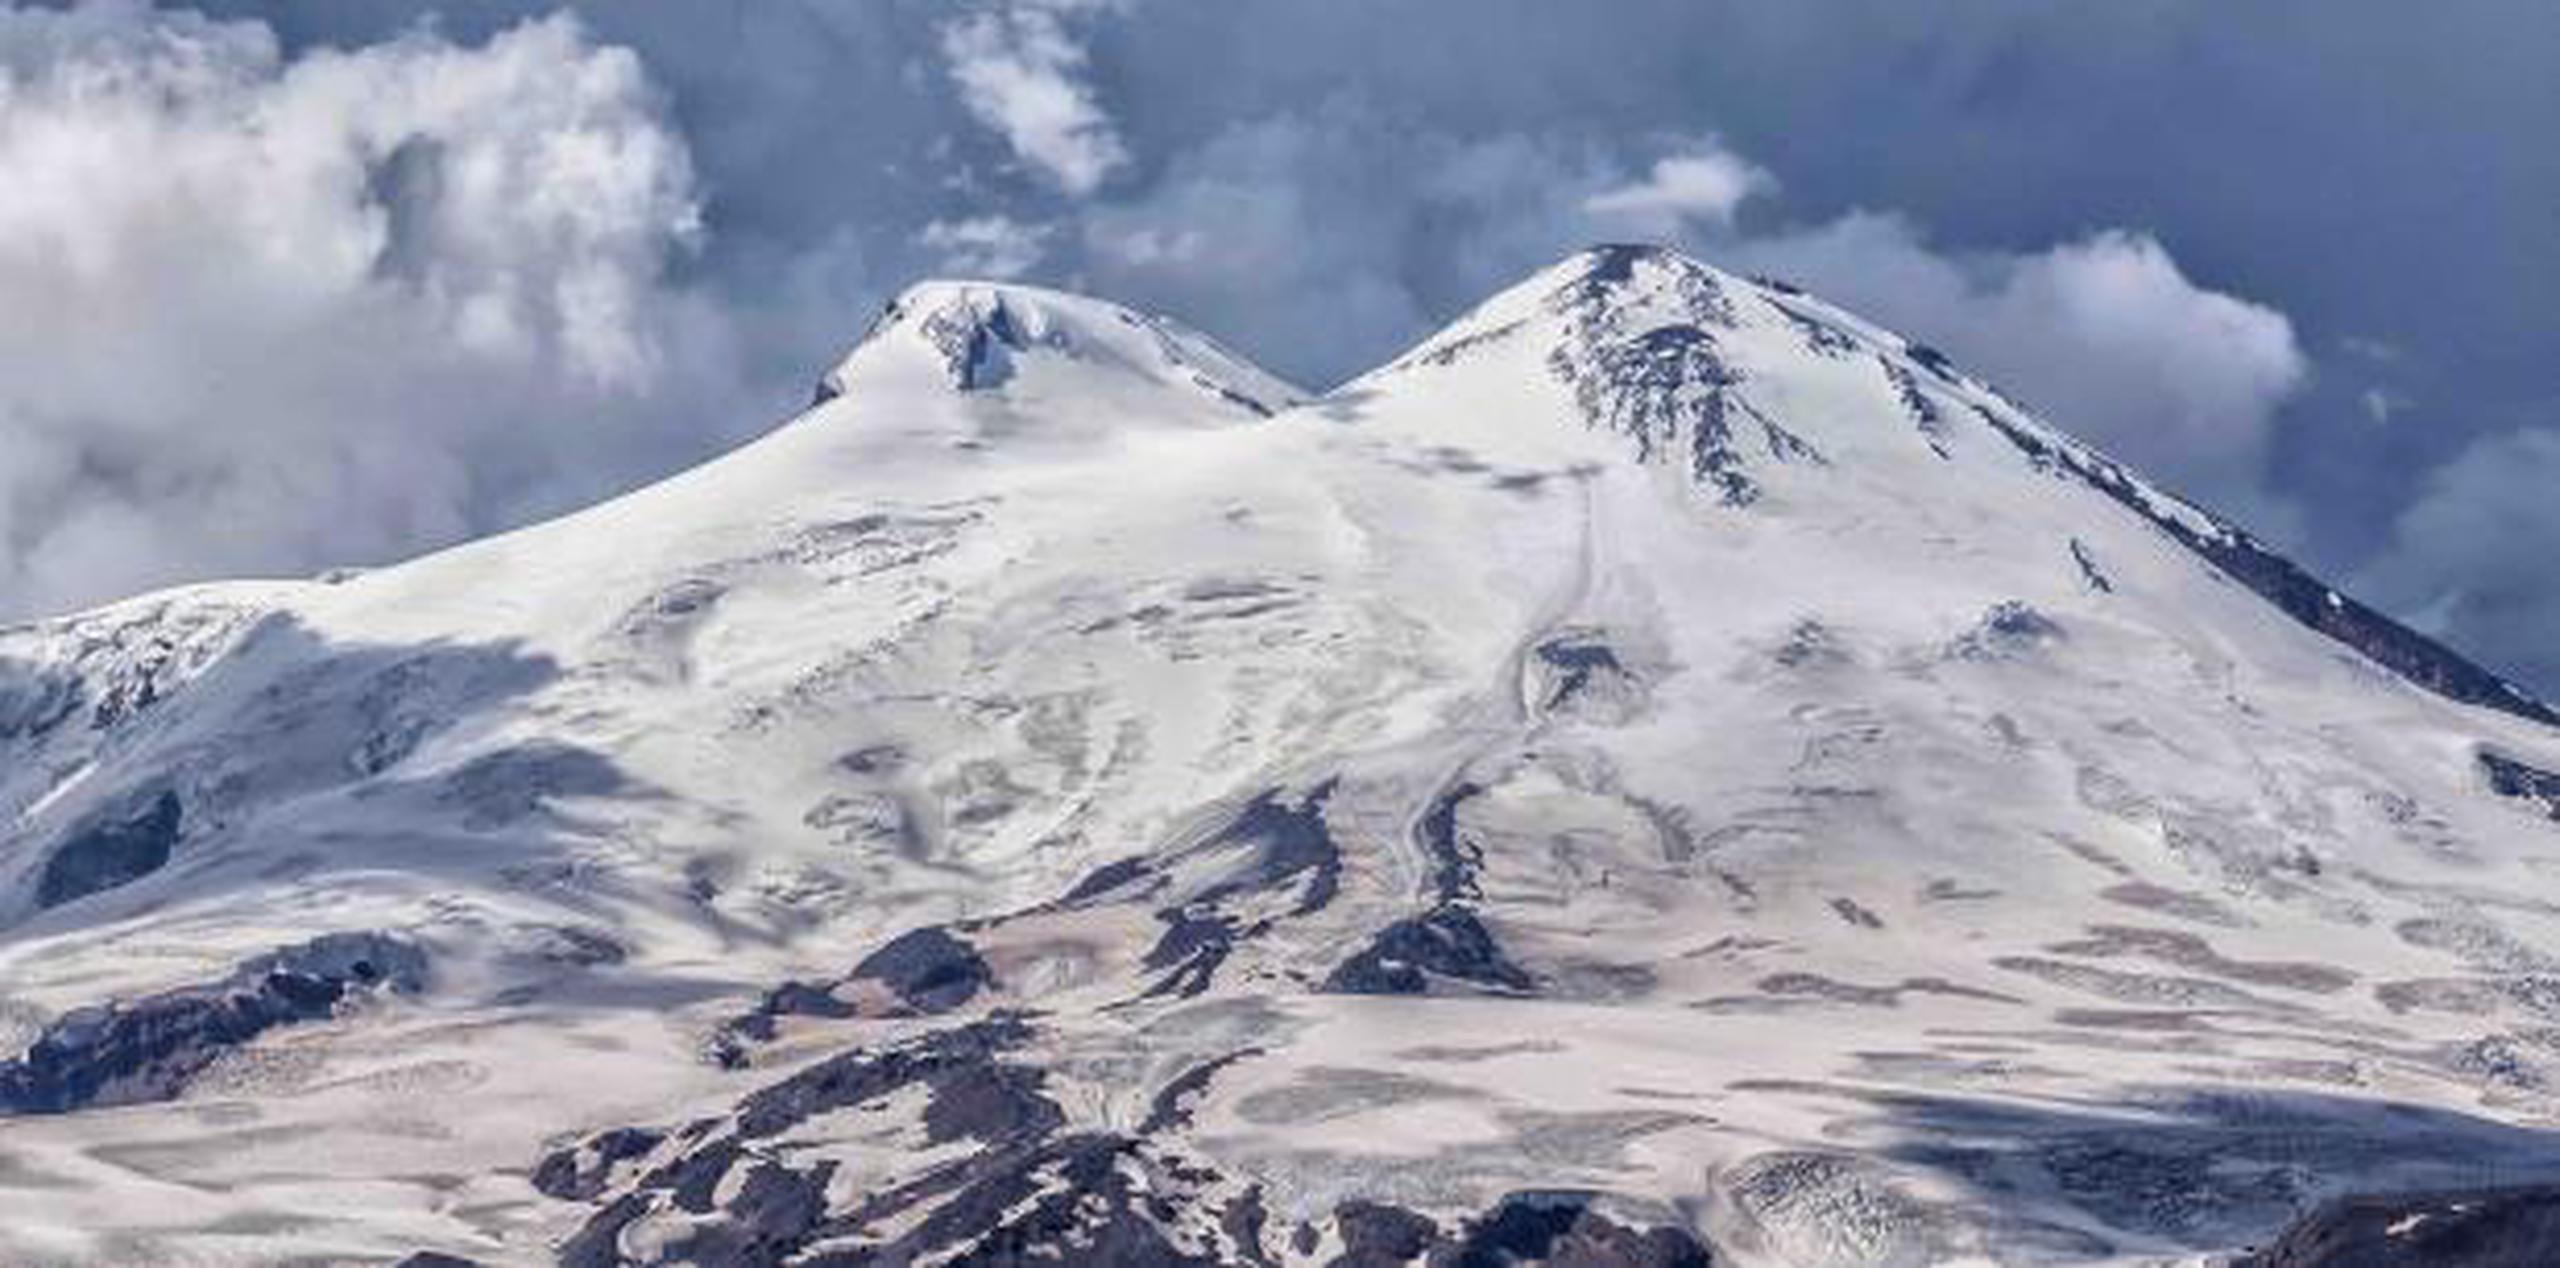 El Monte Elbrus es la cumbre más alta de Europa. (Shutterstock)